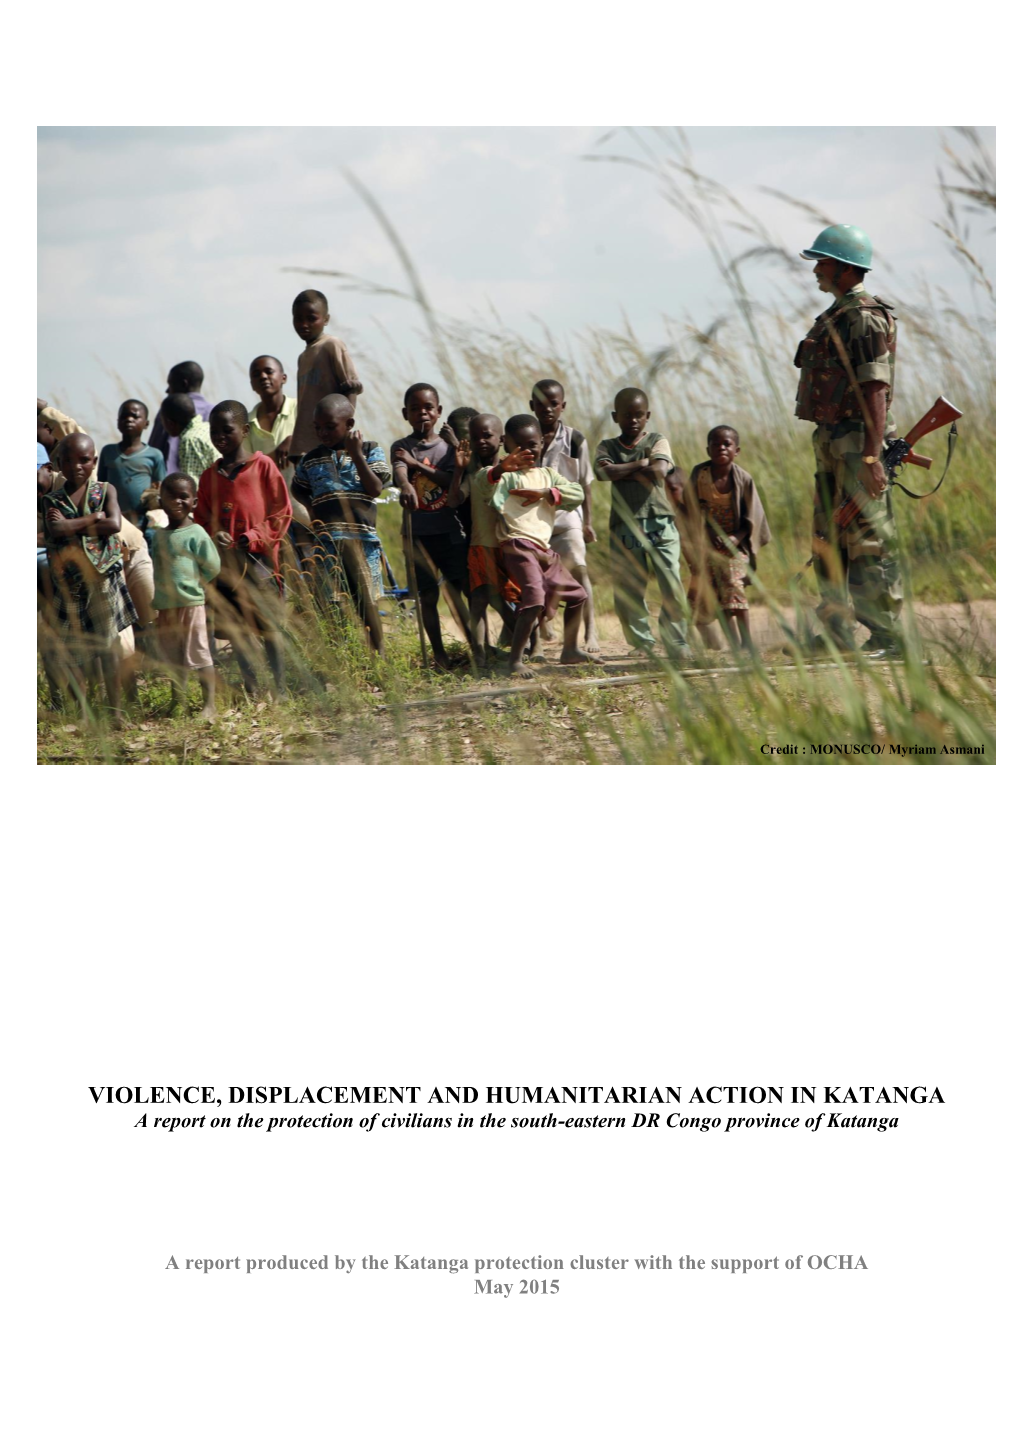 Who Protects Civilians in Katanga